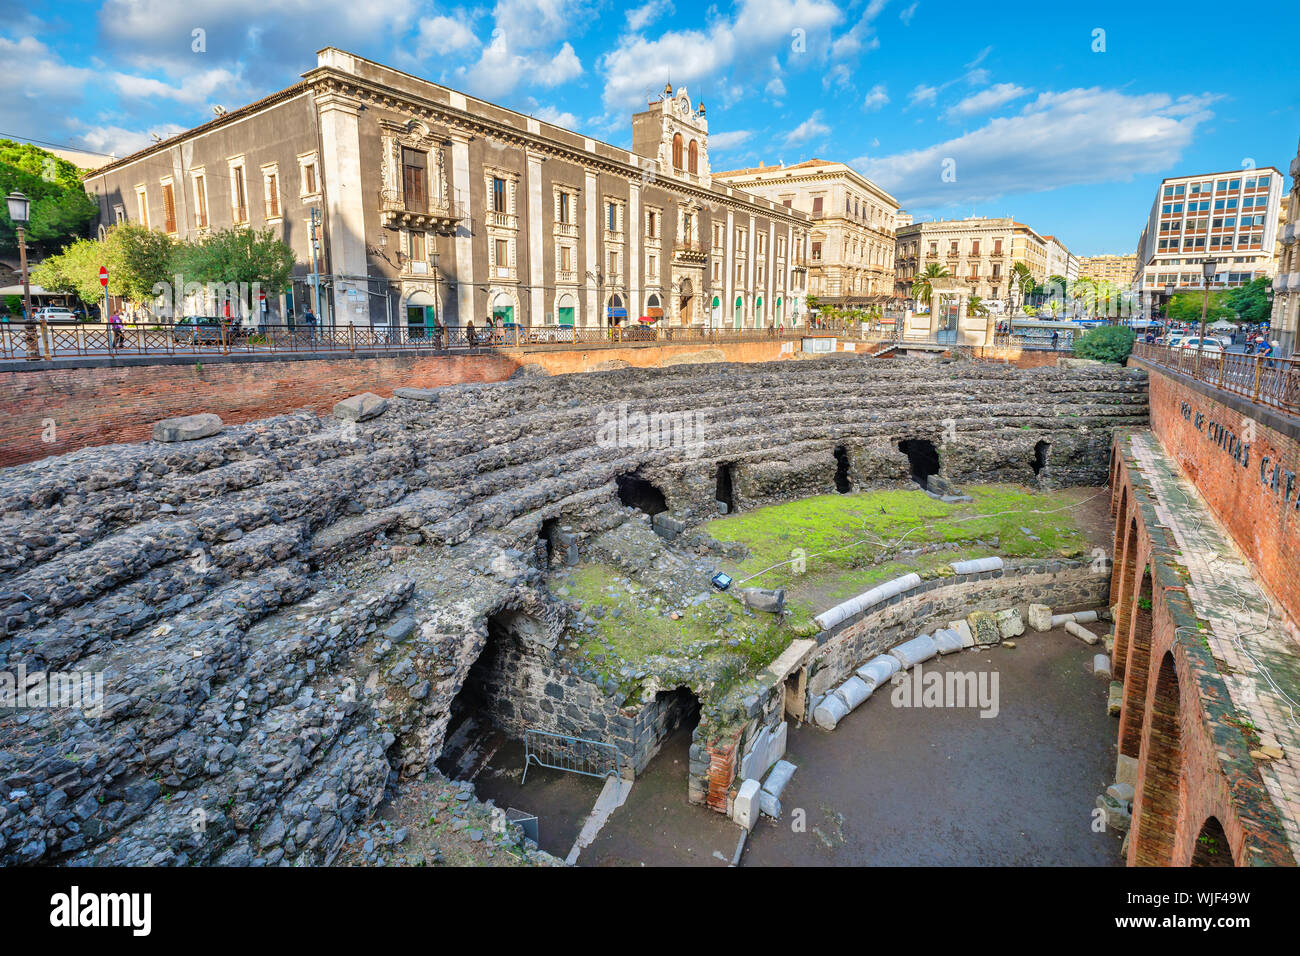 Ruinen der römischen Amphitheater und Tezzano Palast auf Stesicoro Platz. Catania, Sizilien, Italien Stockfoto